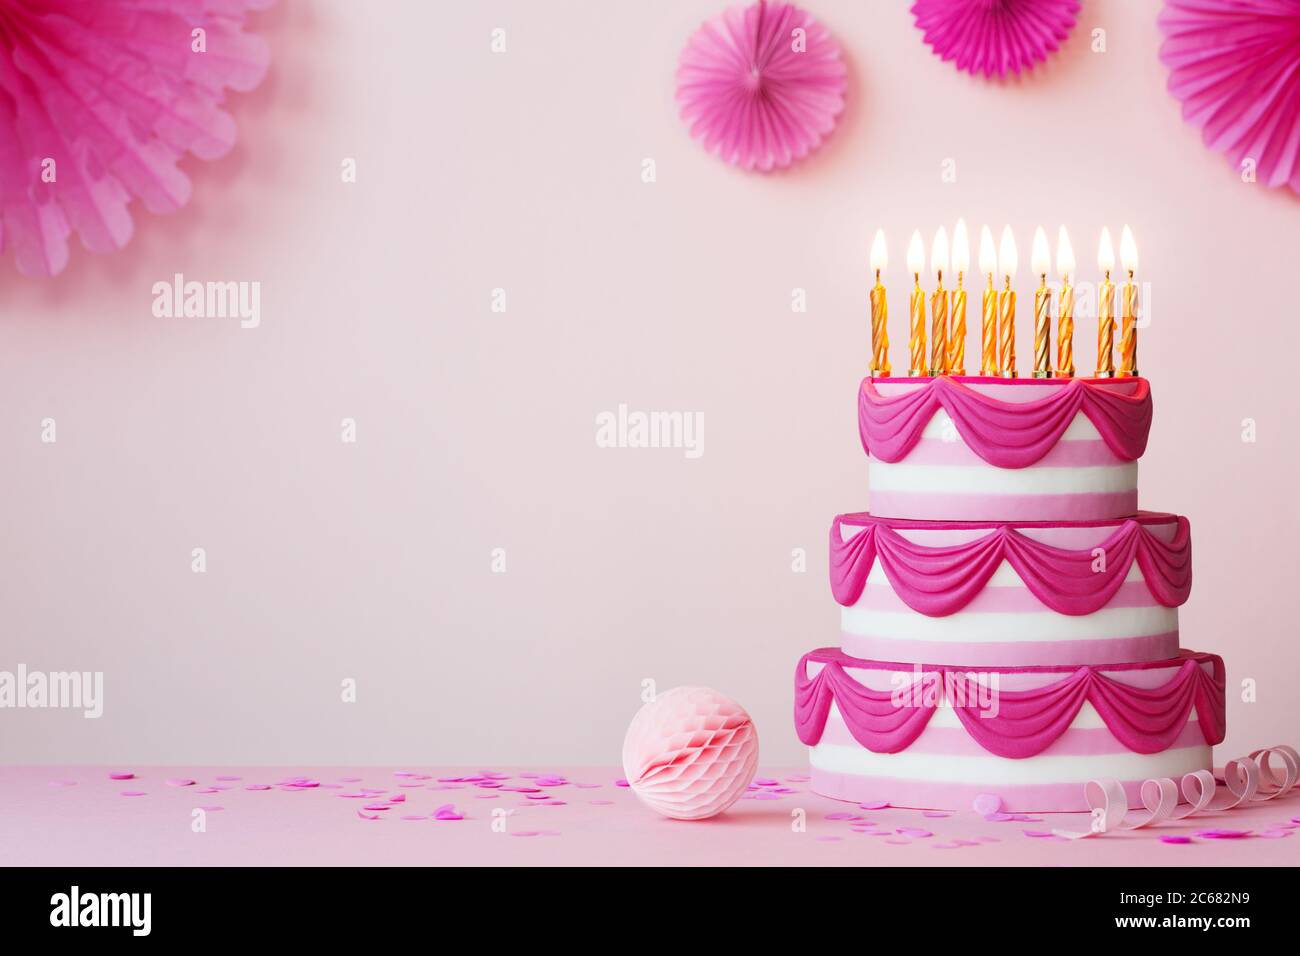 Fiesta de cumpleaños con pastel de cumpleaños escalonado rosa y velas doradas Foto de stock